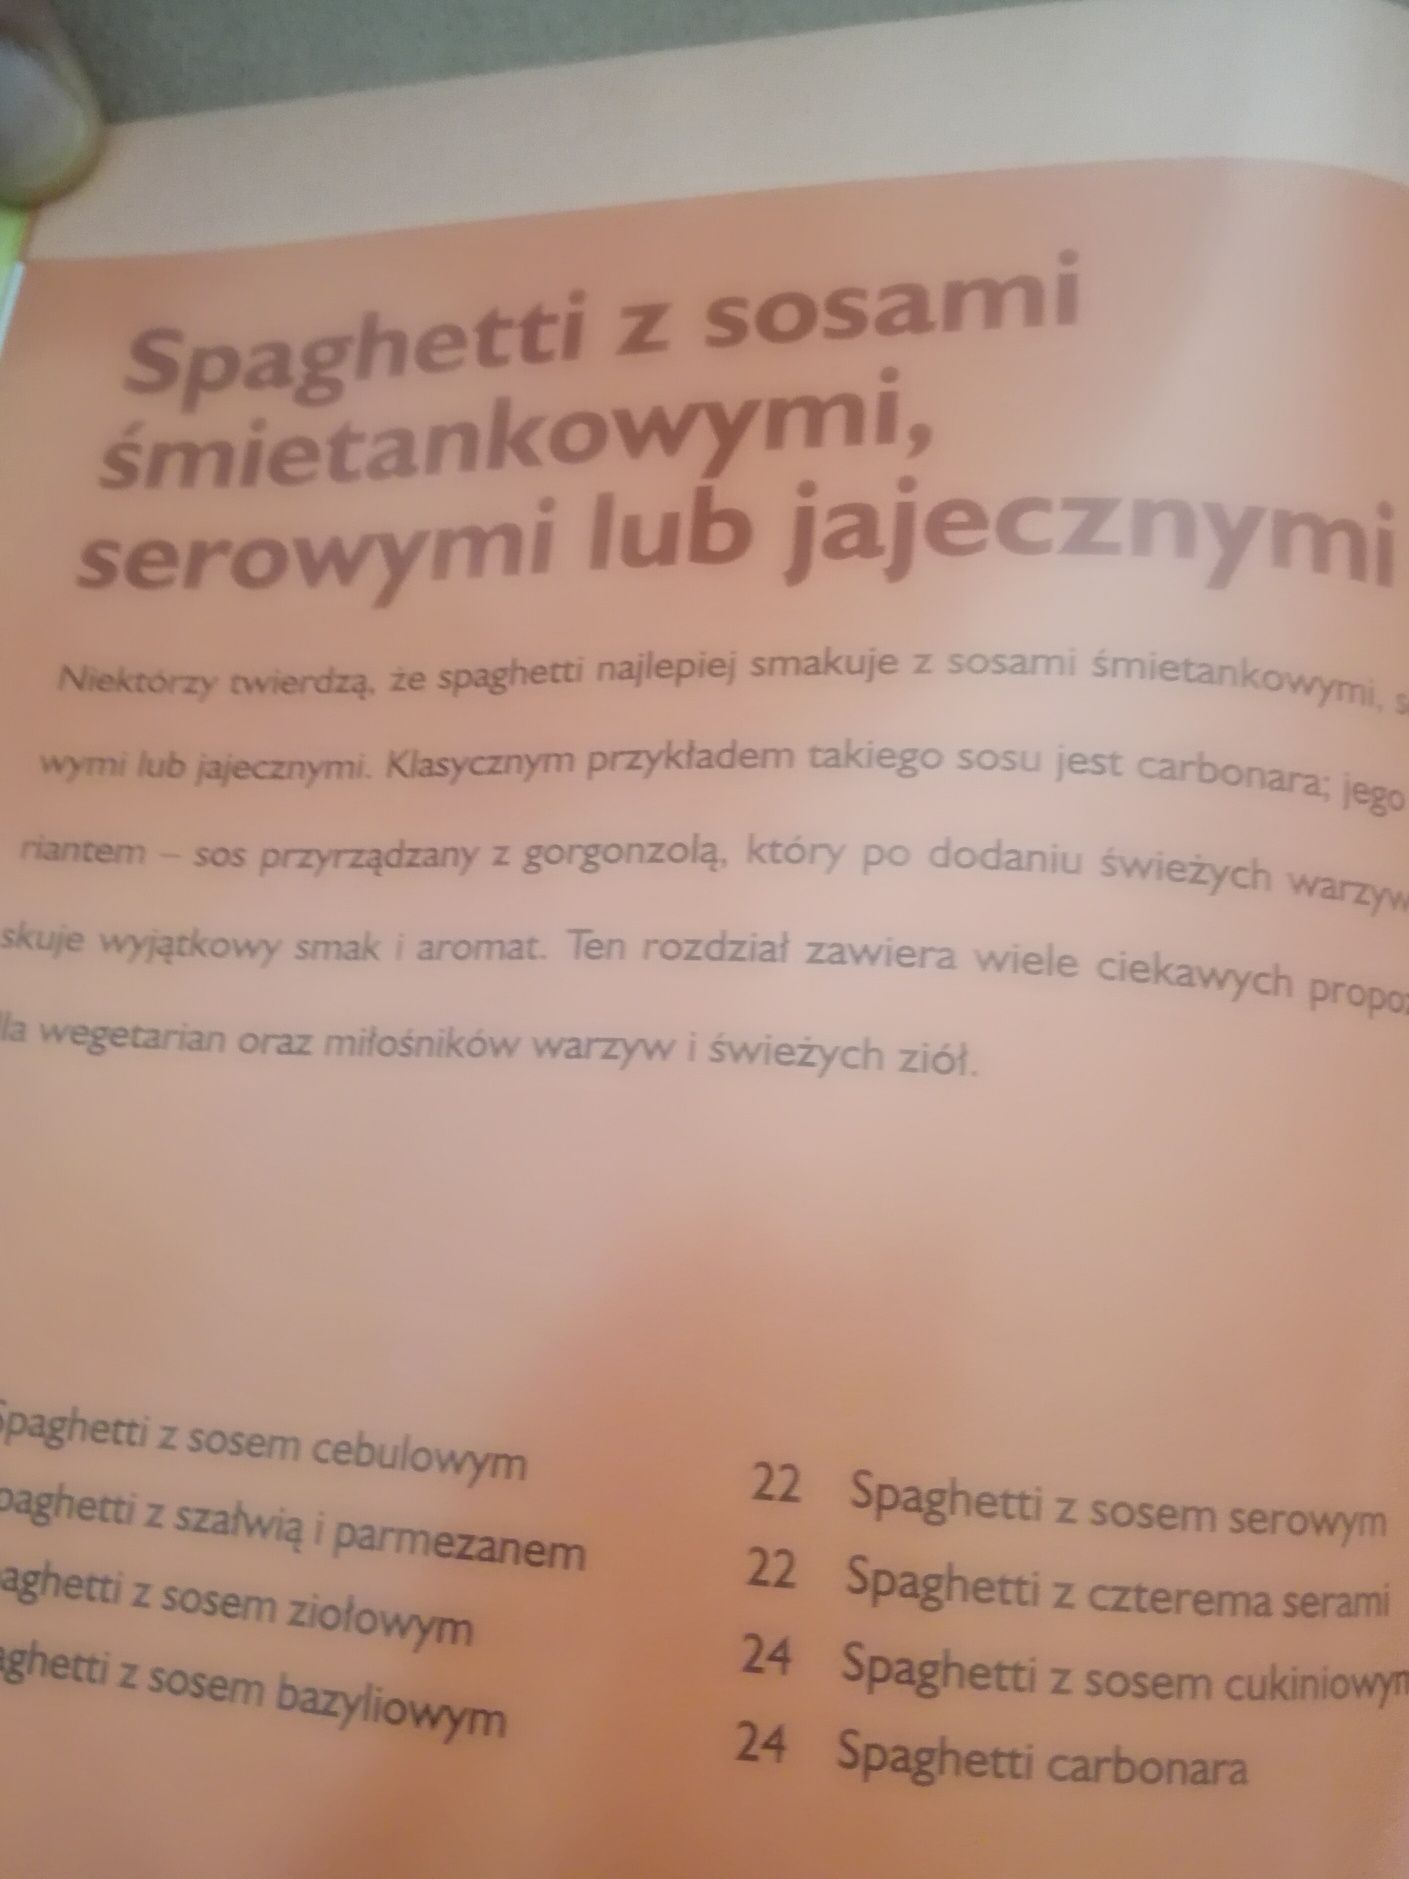 Schinharl Spaghetti na różne sposoby  przepisy gotowanie makaron